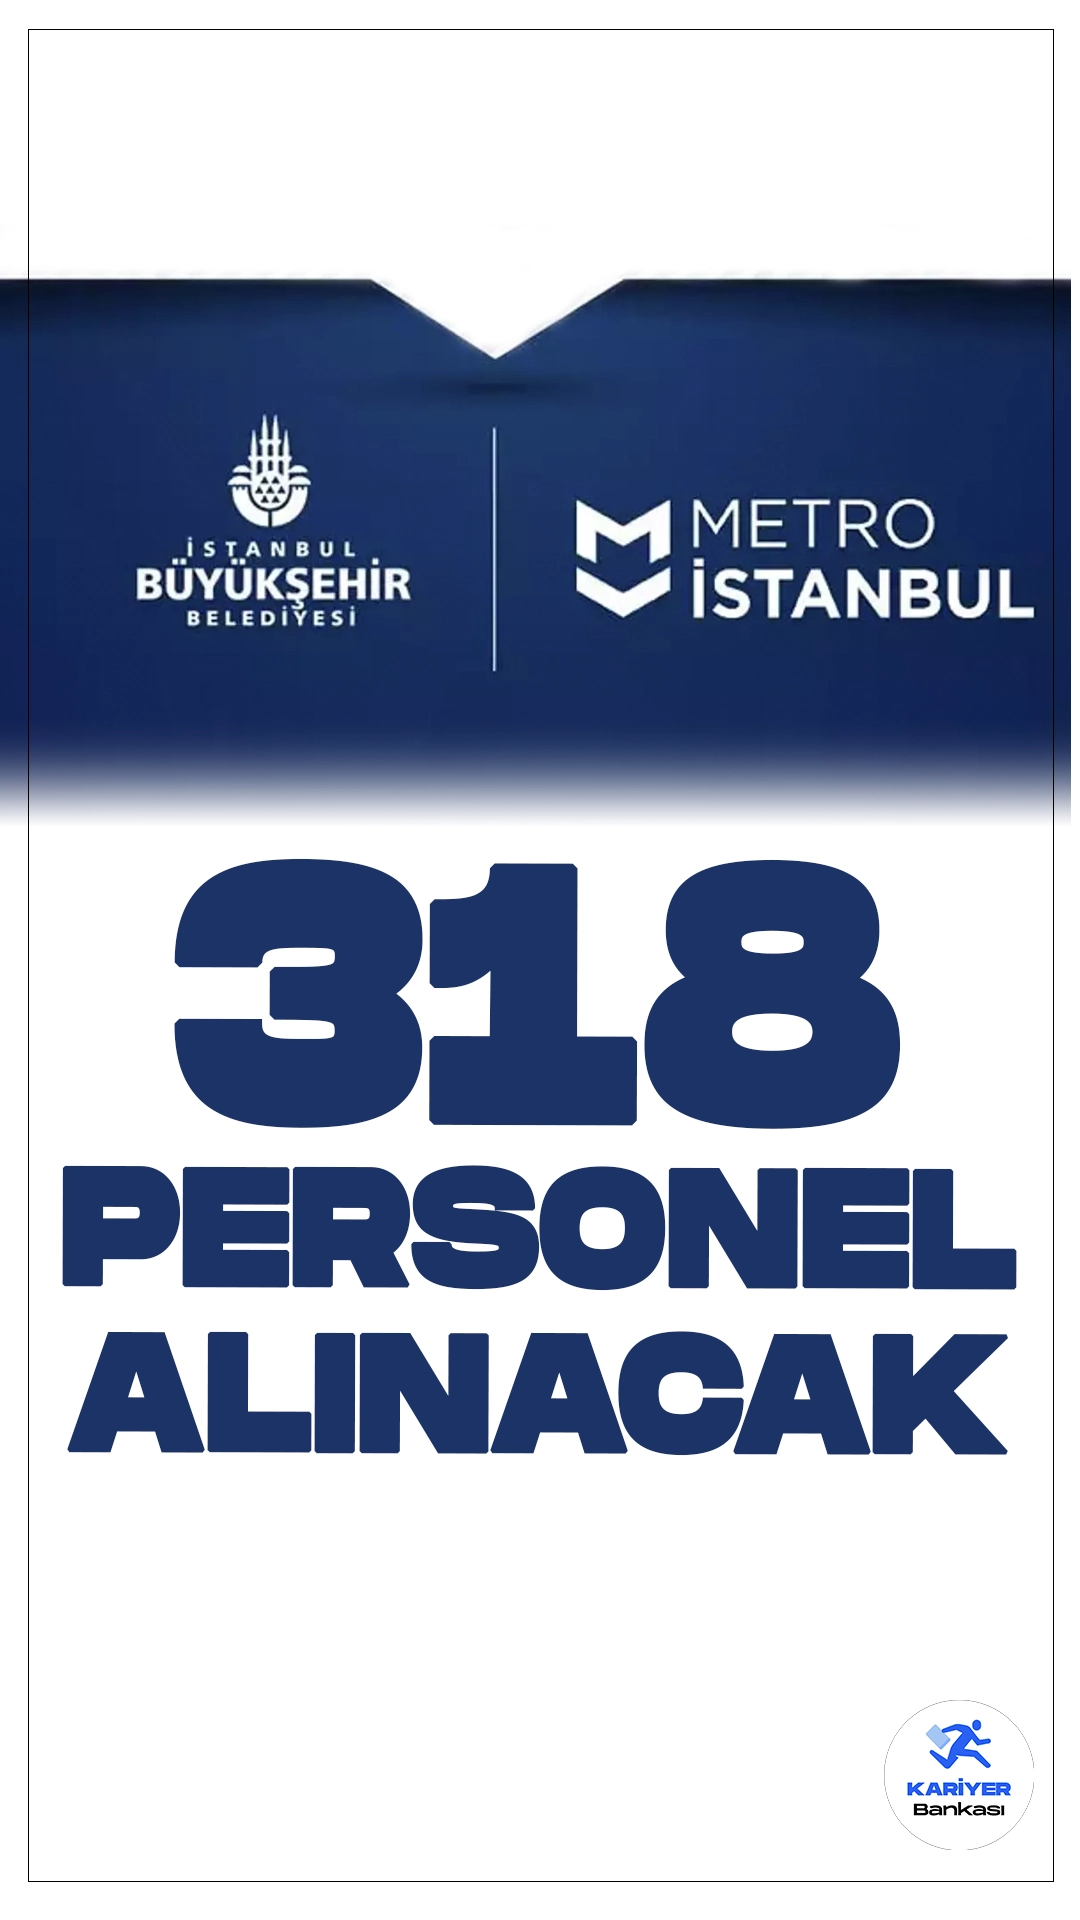 İBB METRO İstanbul A.Ş 318 Personel Alımı Yapacak.İstanbul Büyükşehir Belediyesi'ne bağlı METRO İstanbul, yeni personel alımı ilanını yayımladı. Bu ilan doğrultusunda, METRO İstanbul bünyesindeki eksiklikleri gidermek amacıyla farklı kadrolarda personel alımı yapılacağı açıklandı. İlana göre kontenjan dağılımı ve başvuru şartlarına dair tüm detaylar Kariyerbankasi.net'in bu haberinde.